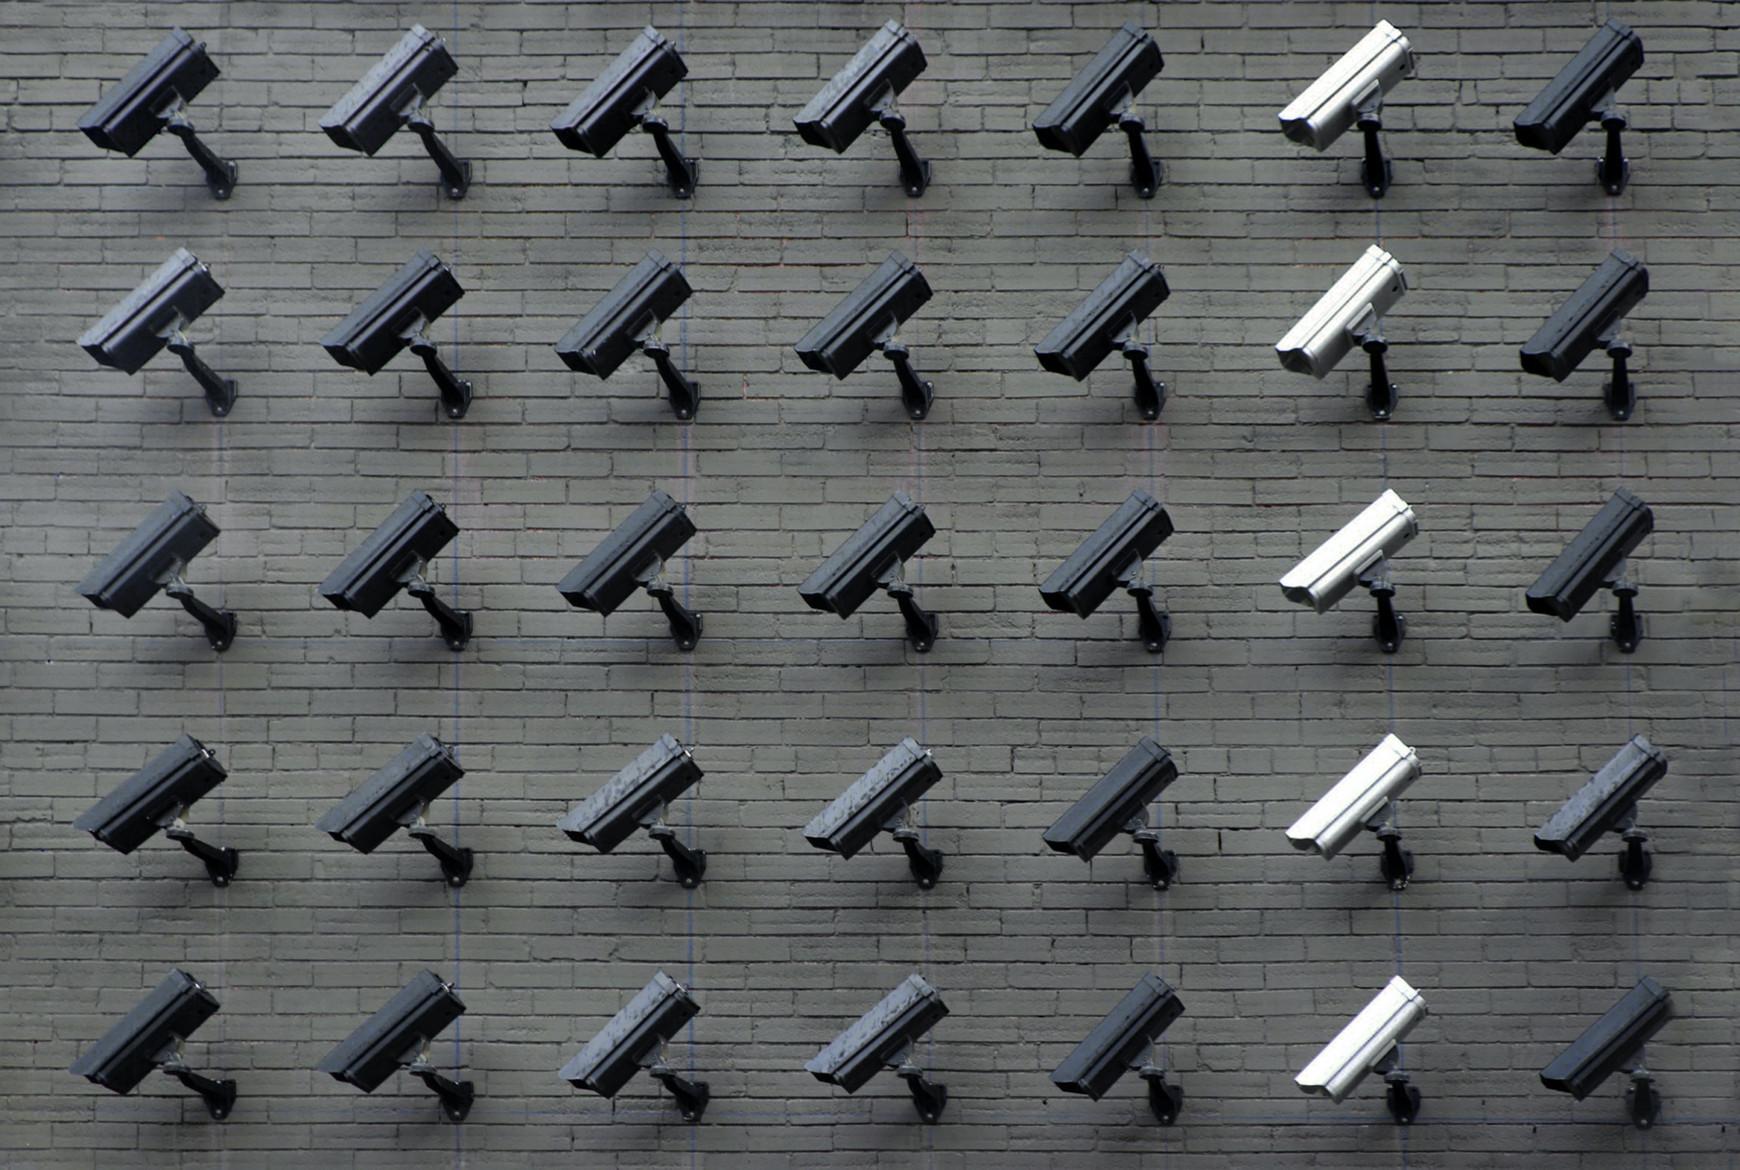 La vidéosurveillance algorithmique : sécurité ou répression ?